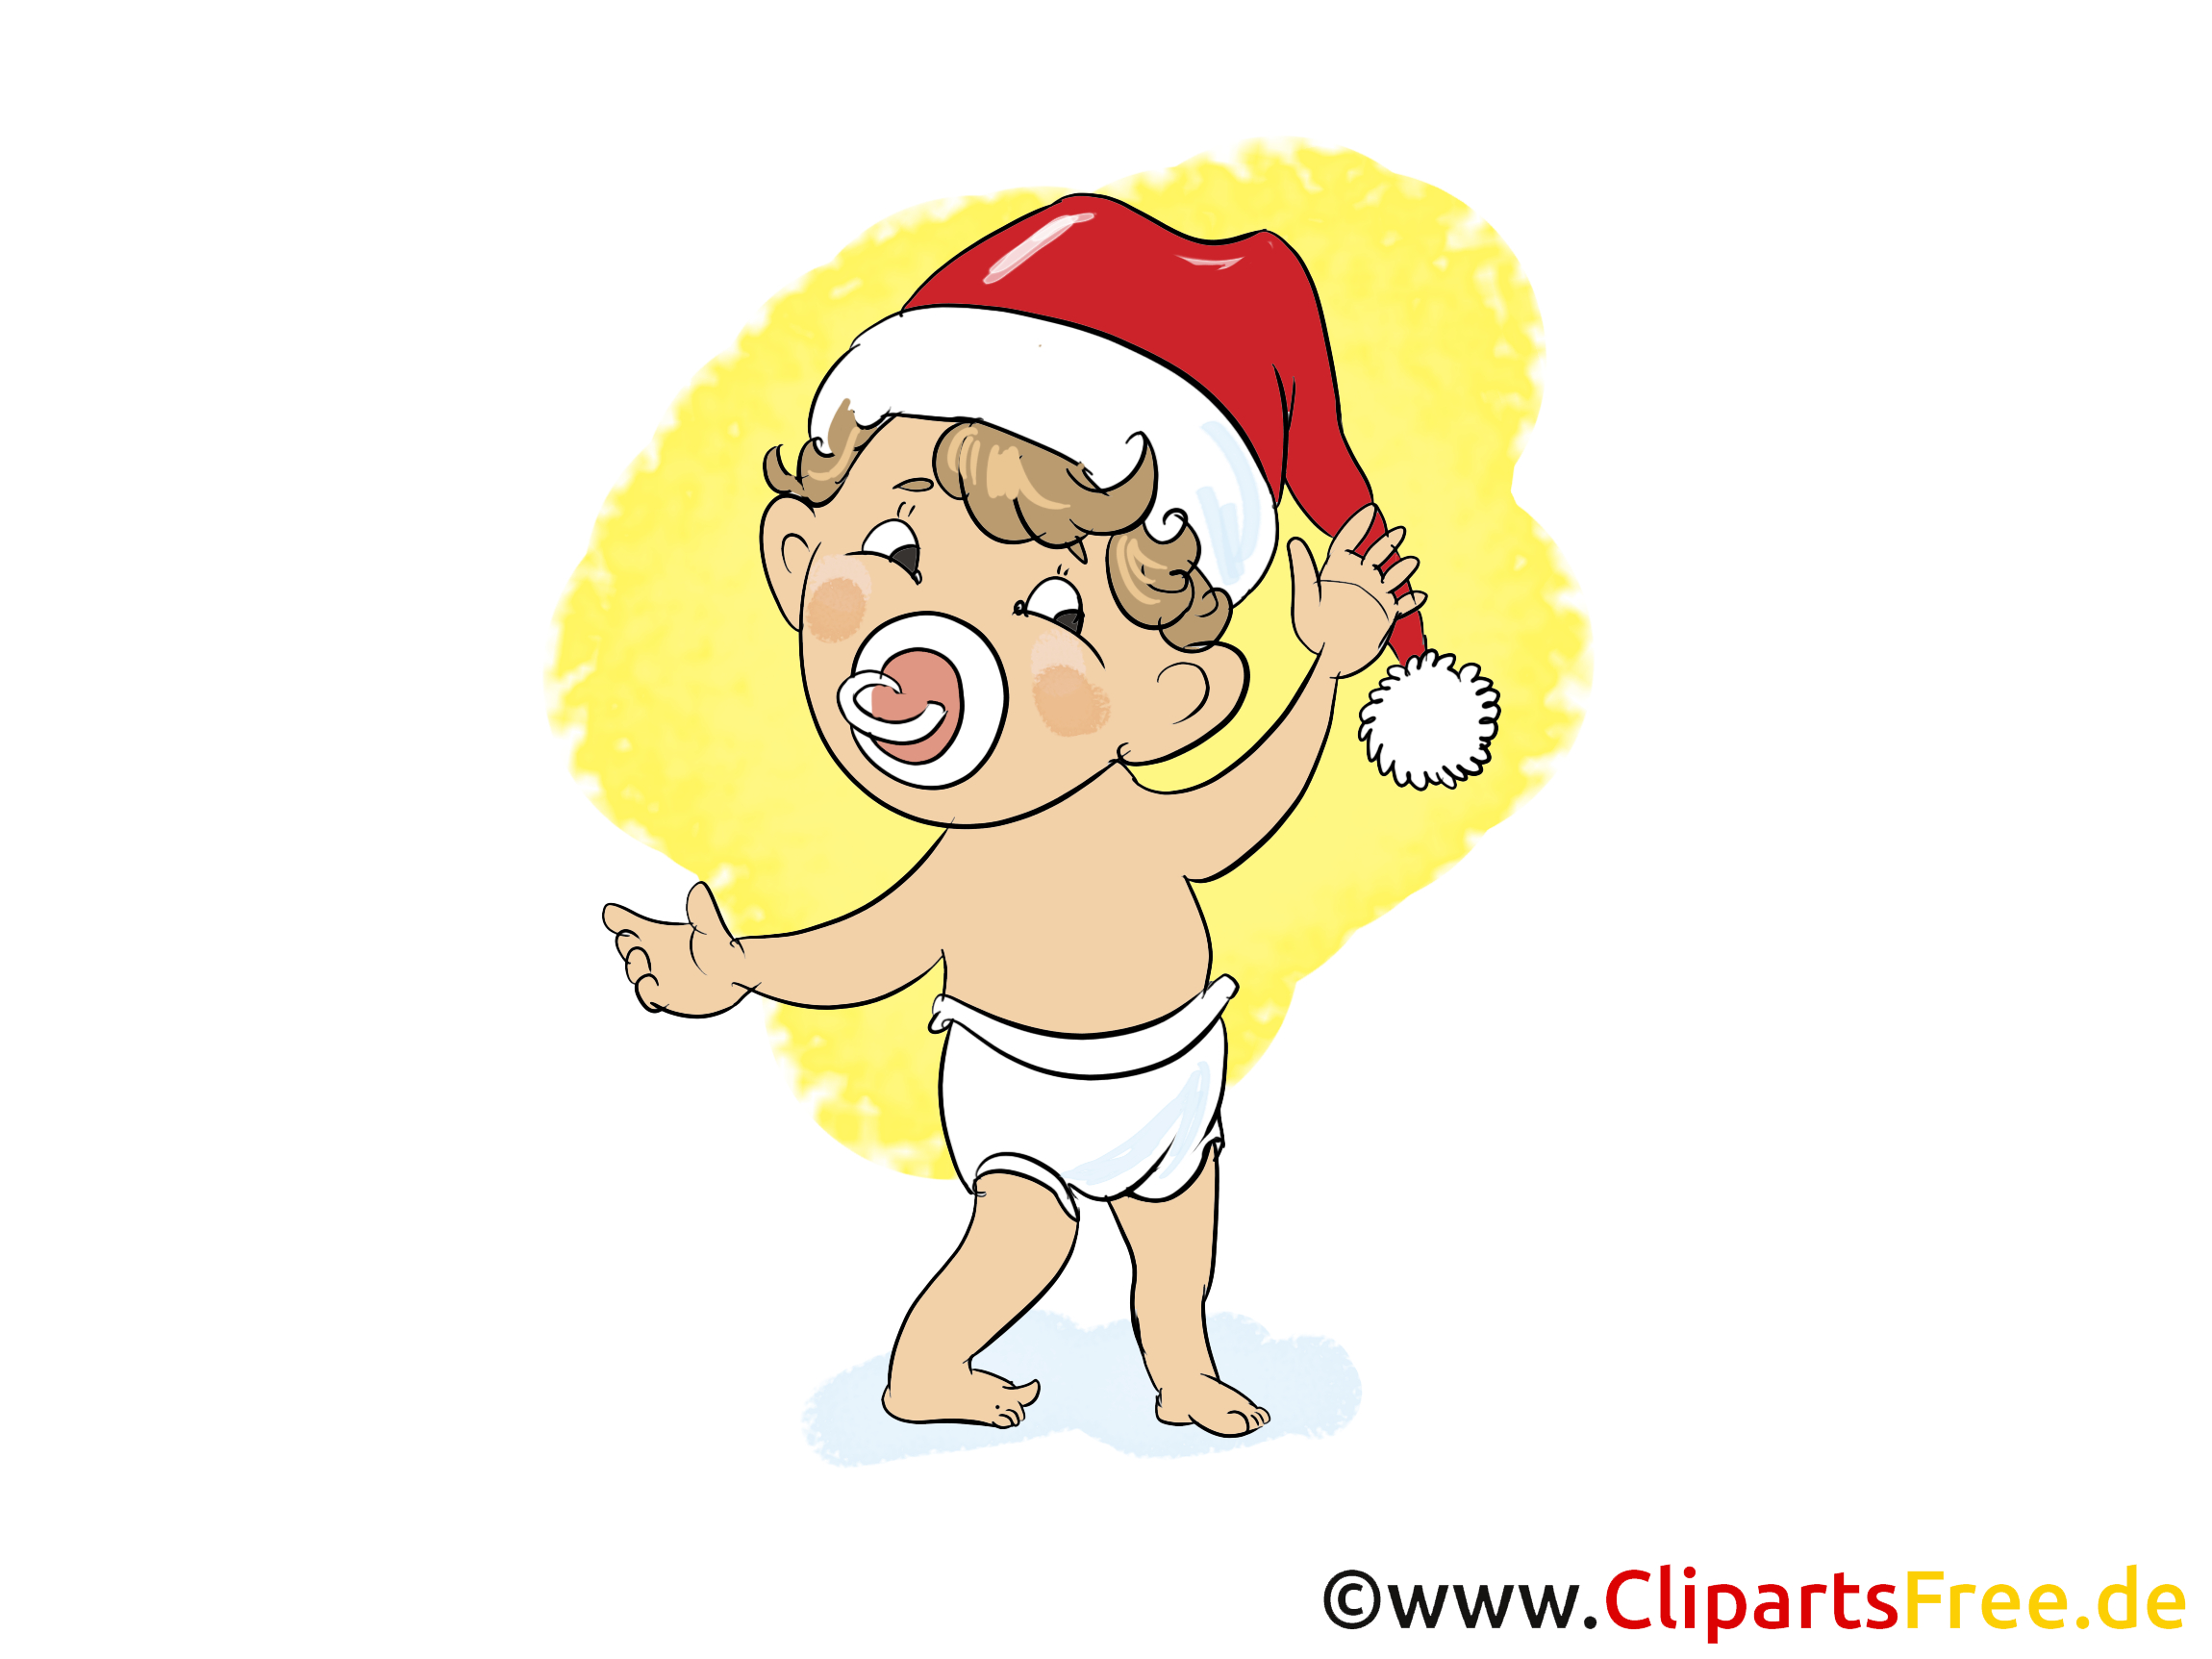 Kostenlos Clipart Zu Weihnachten, Silvester, Neujahr in Cliparts Weihnachten Und Neujahr Kostenlos